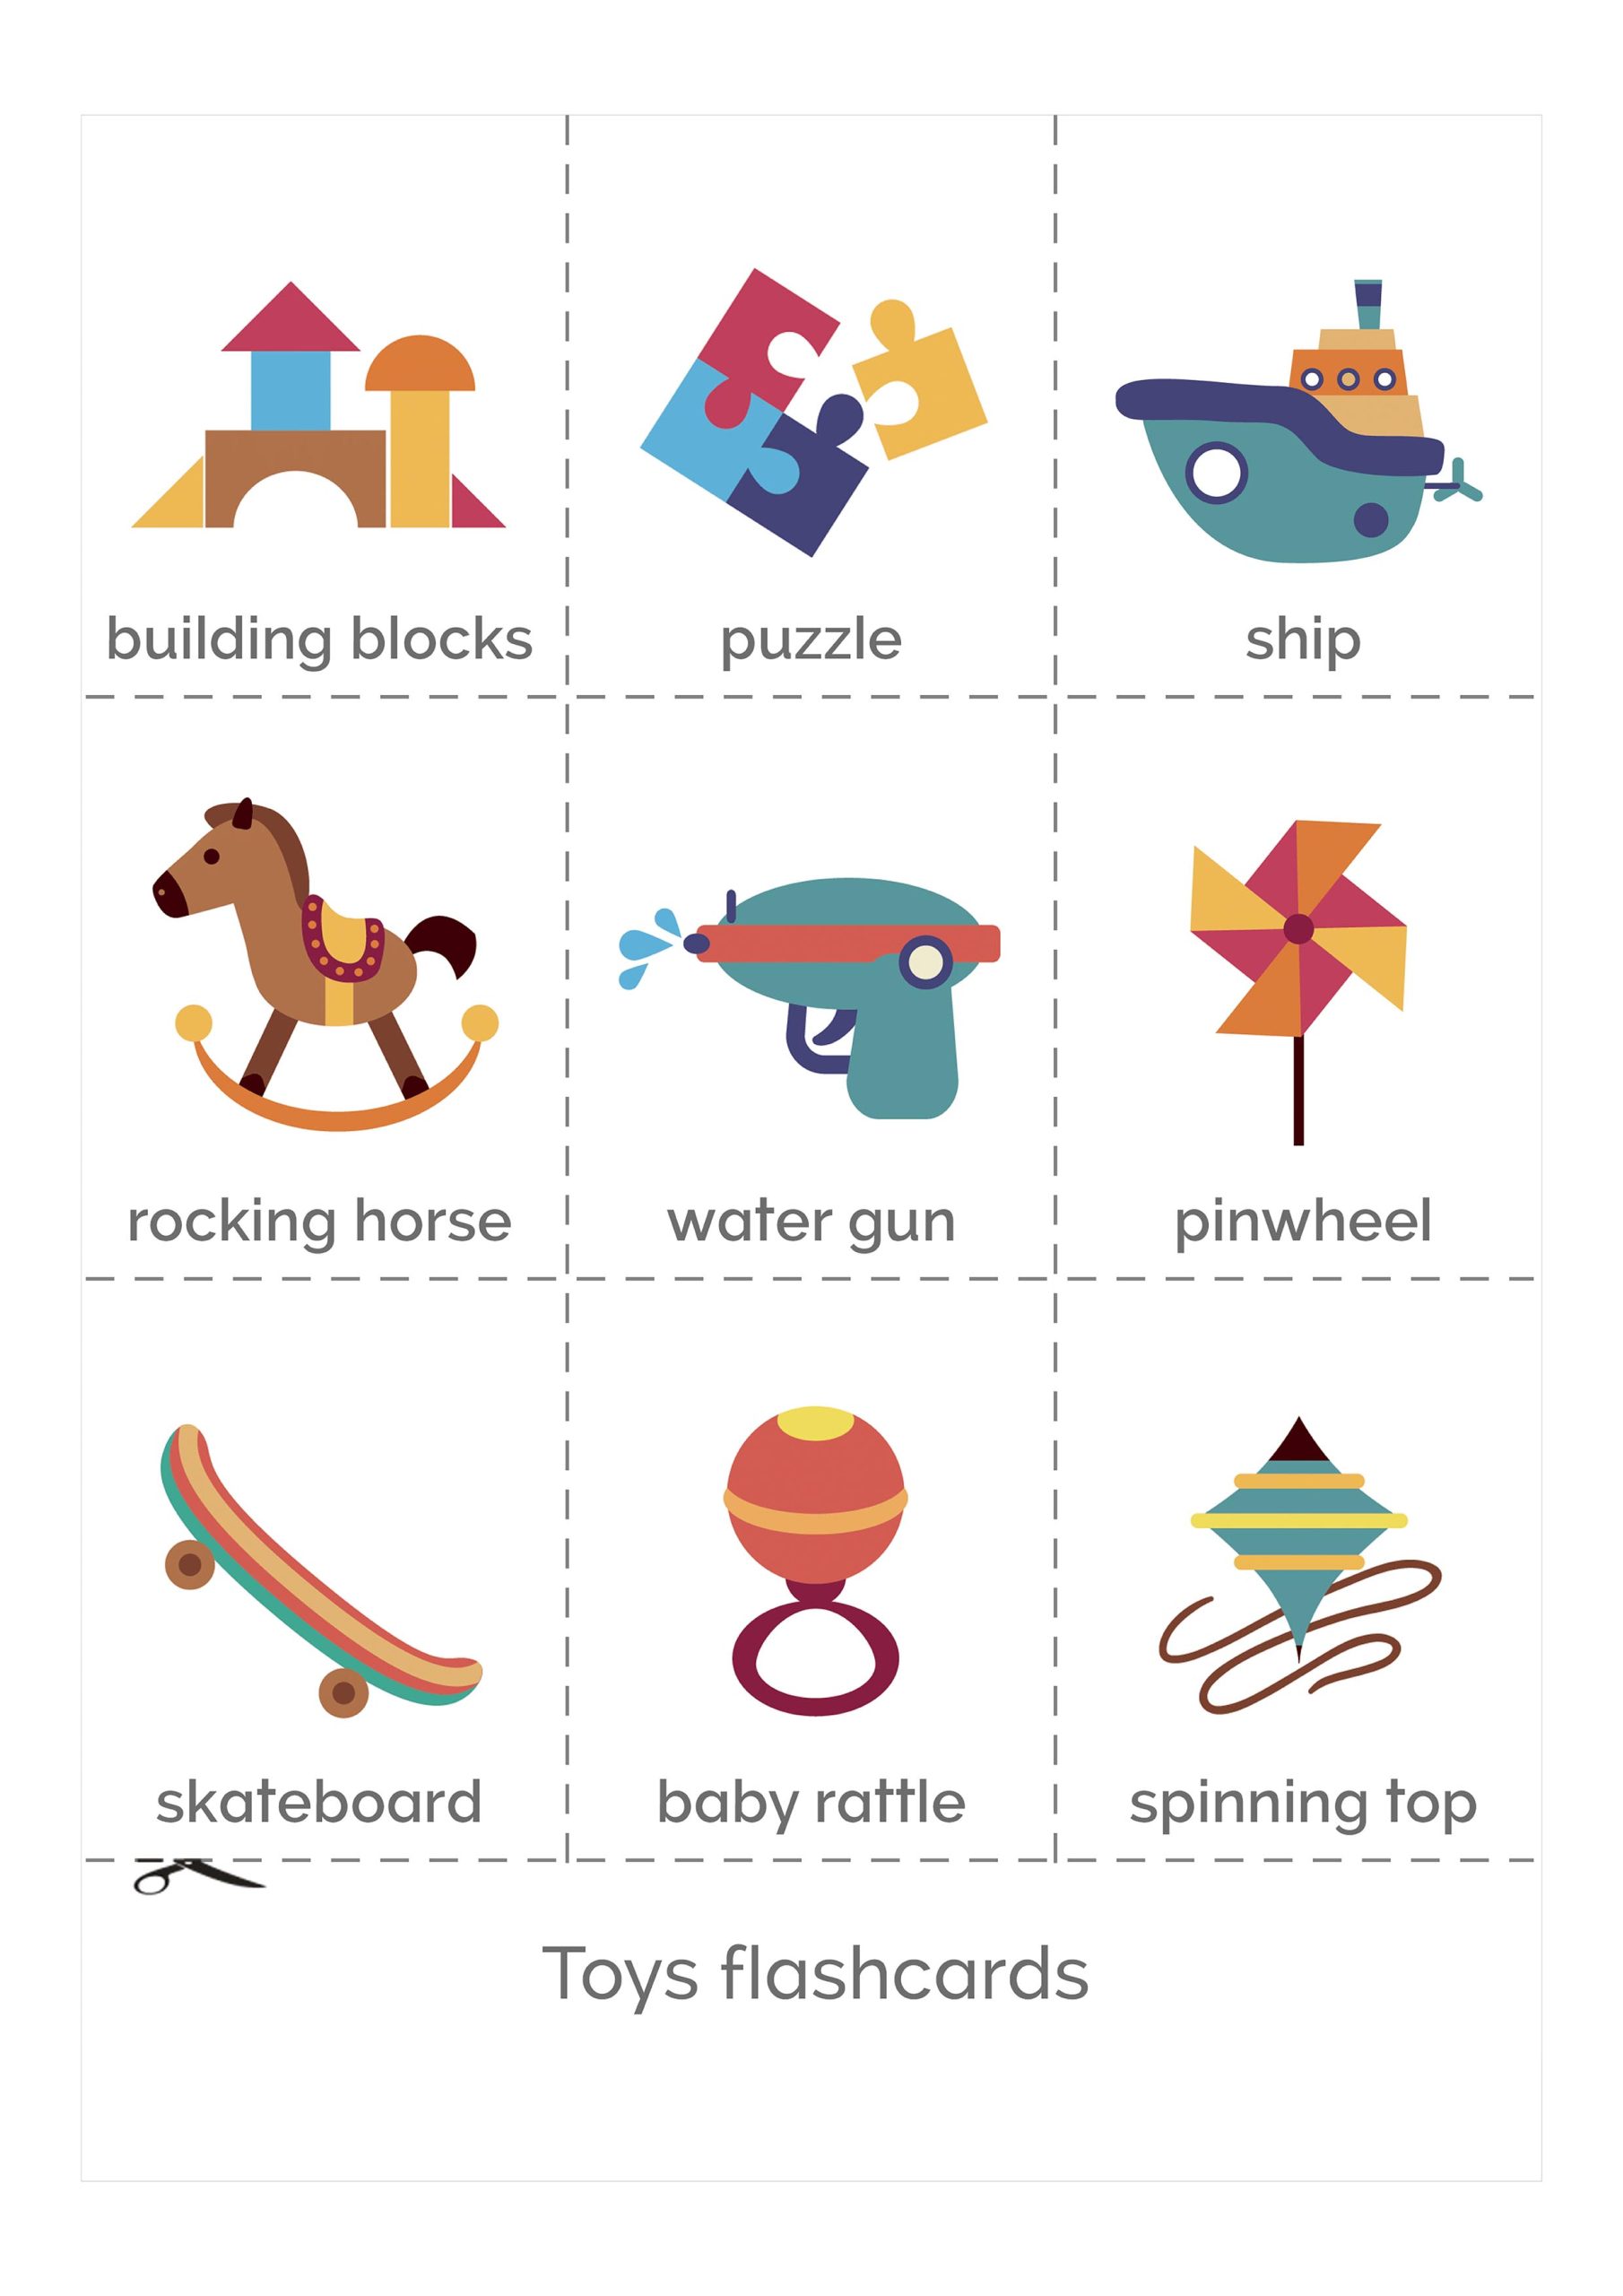 Изображения игрушек на английском для использования в качестве фона